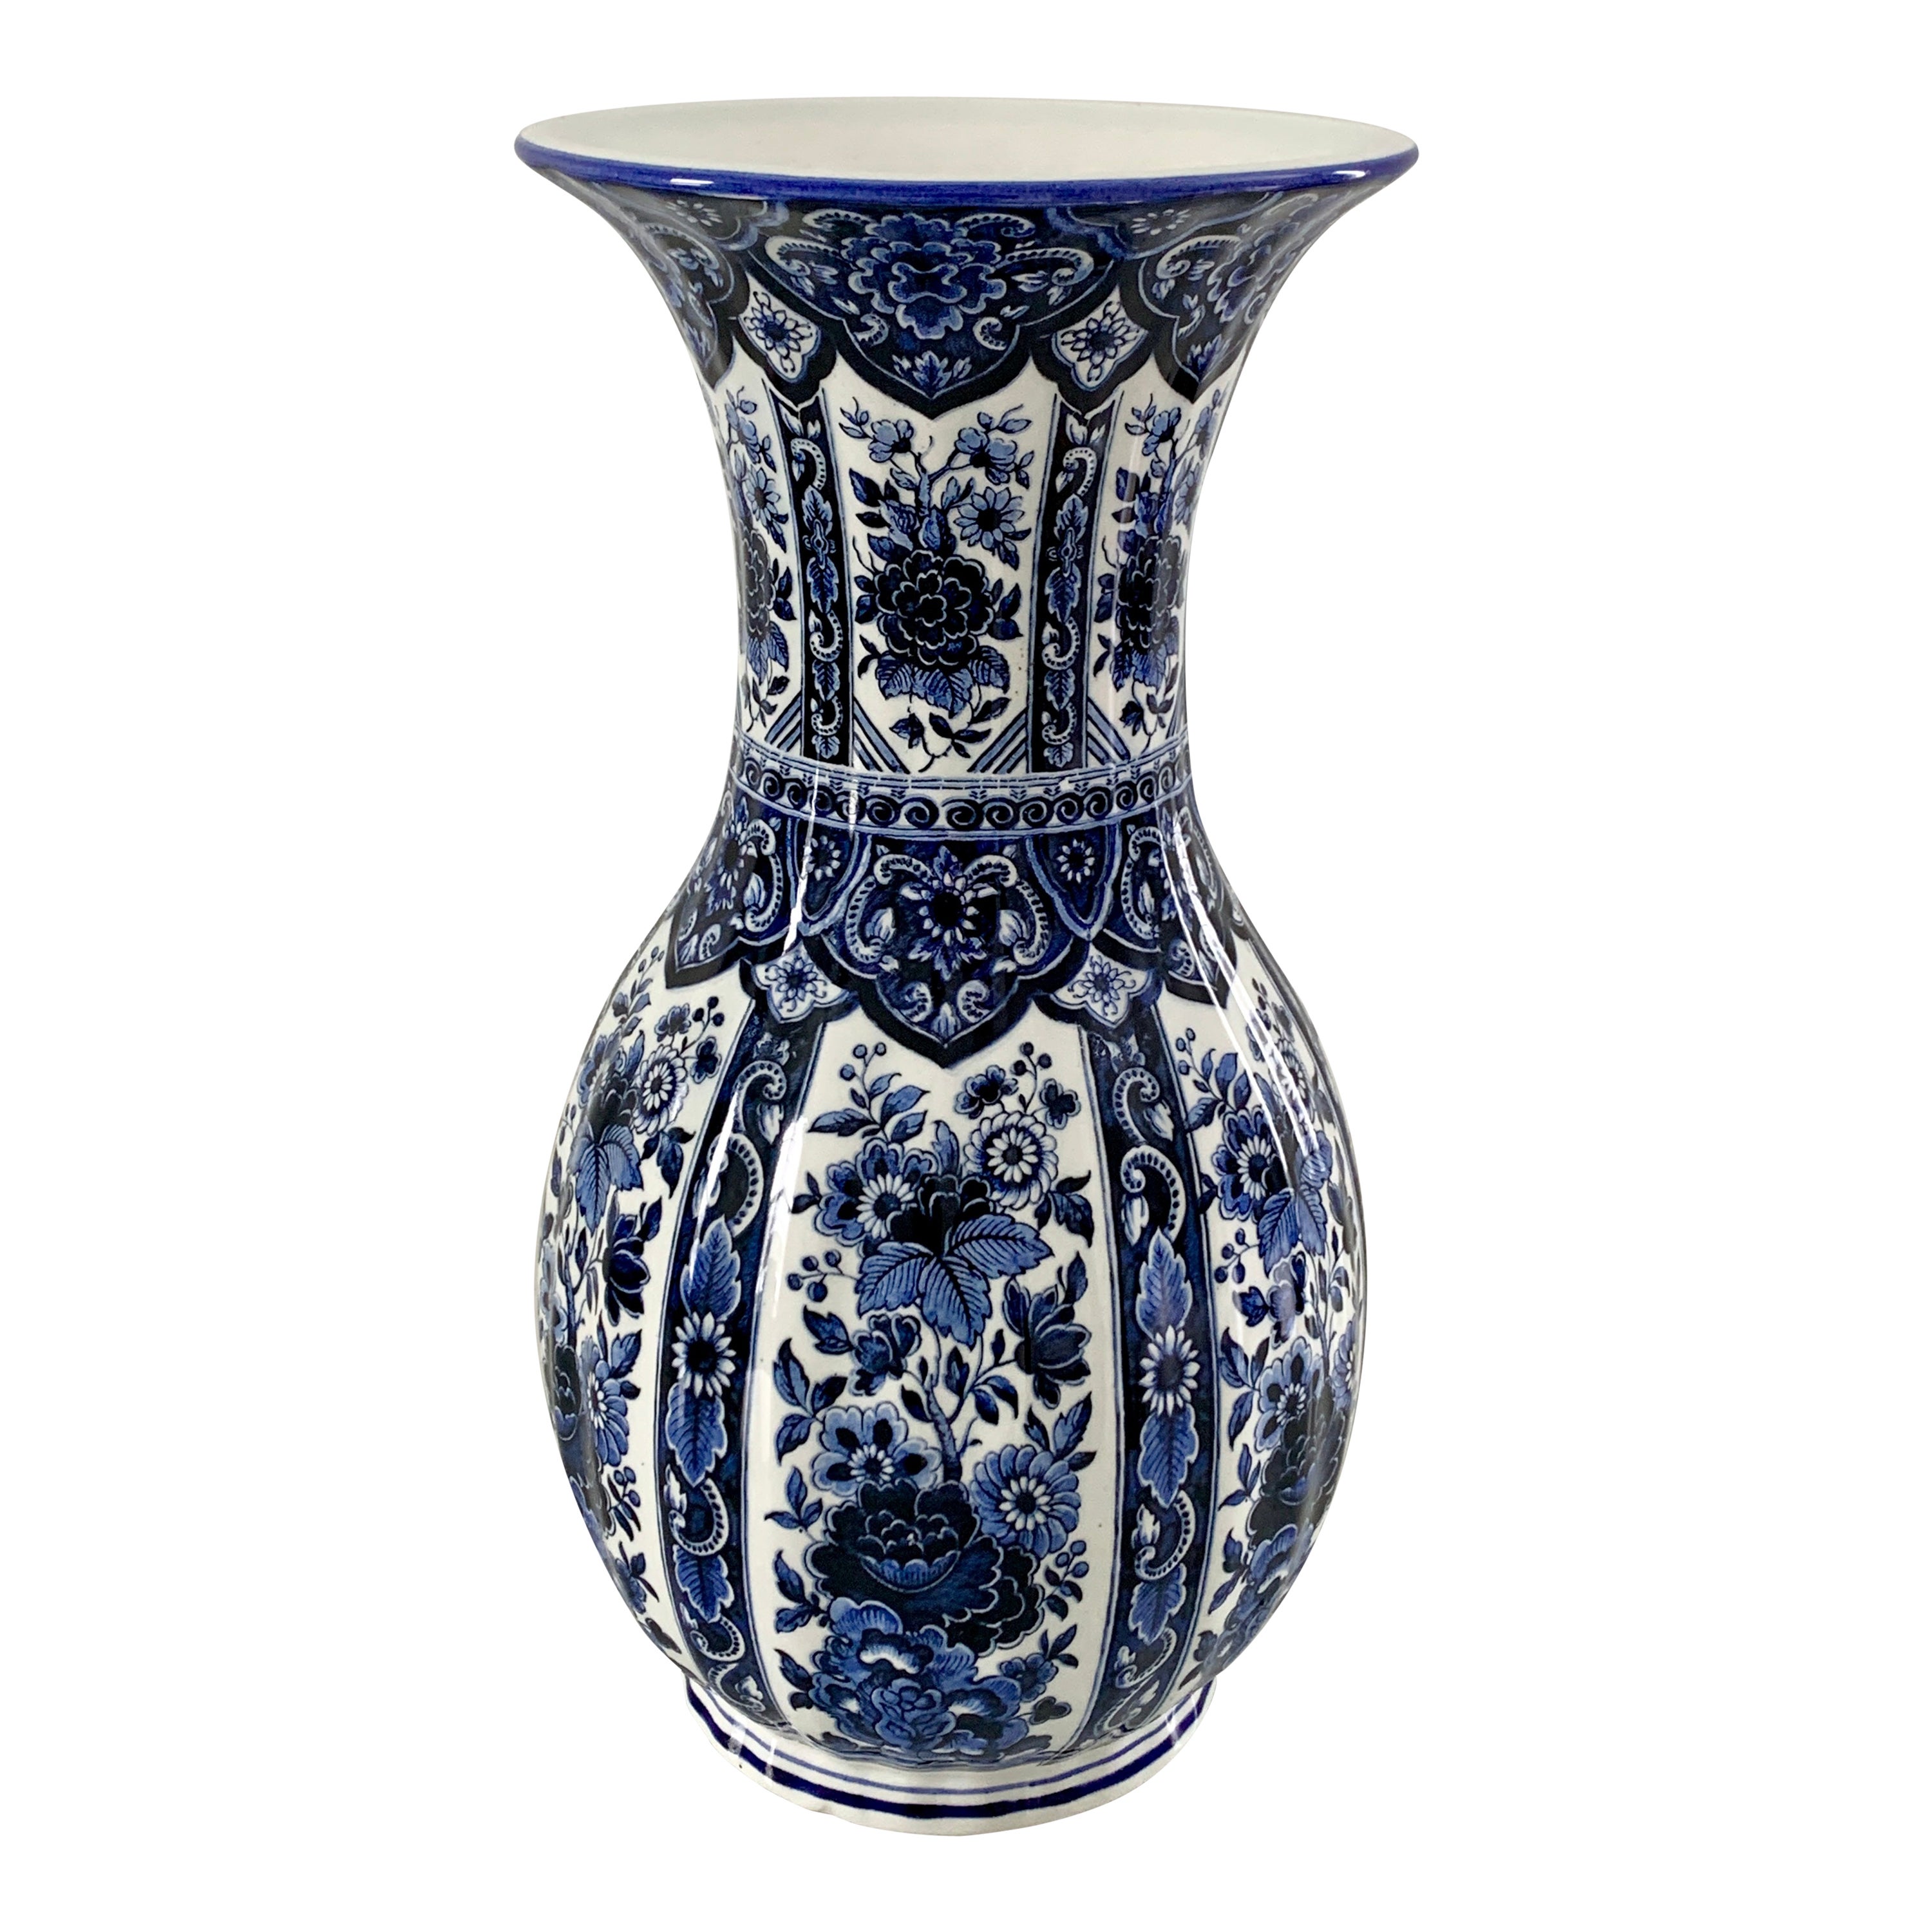 Vase en porcelaine de Delfts de style chinoiseries bleu et blanc